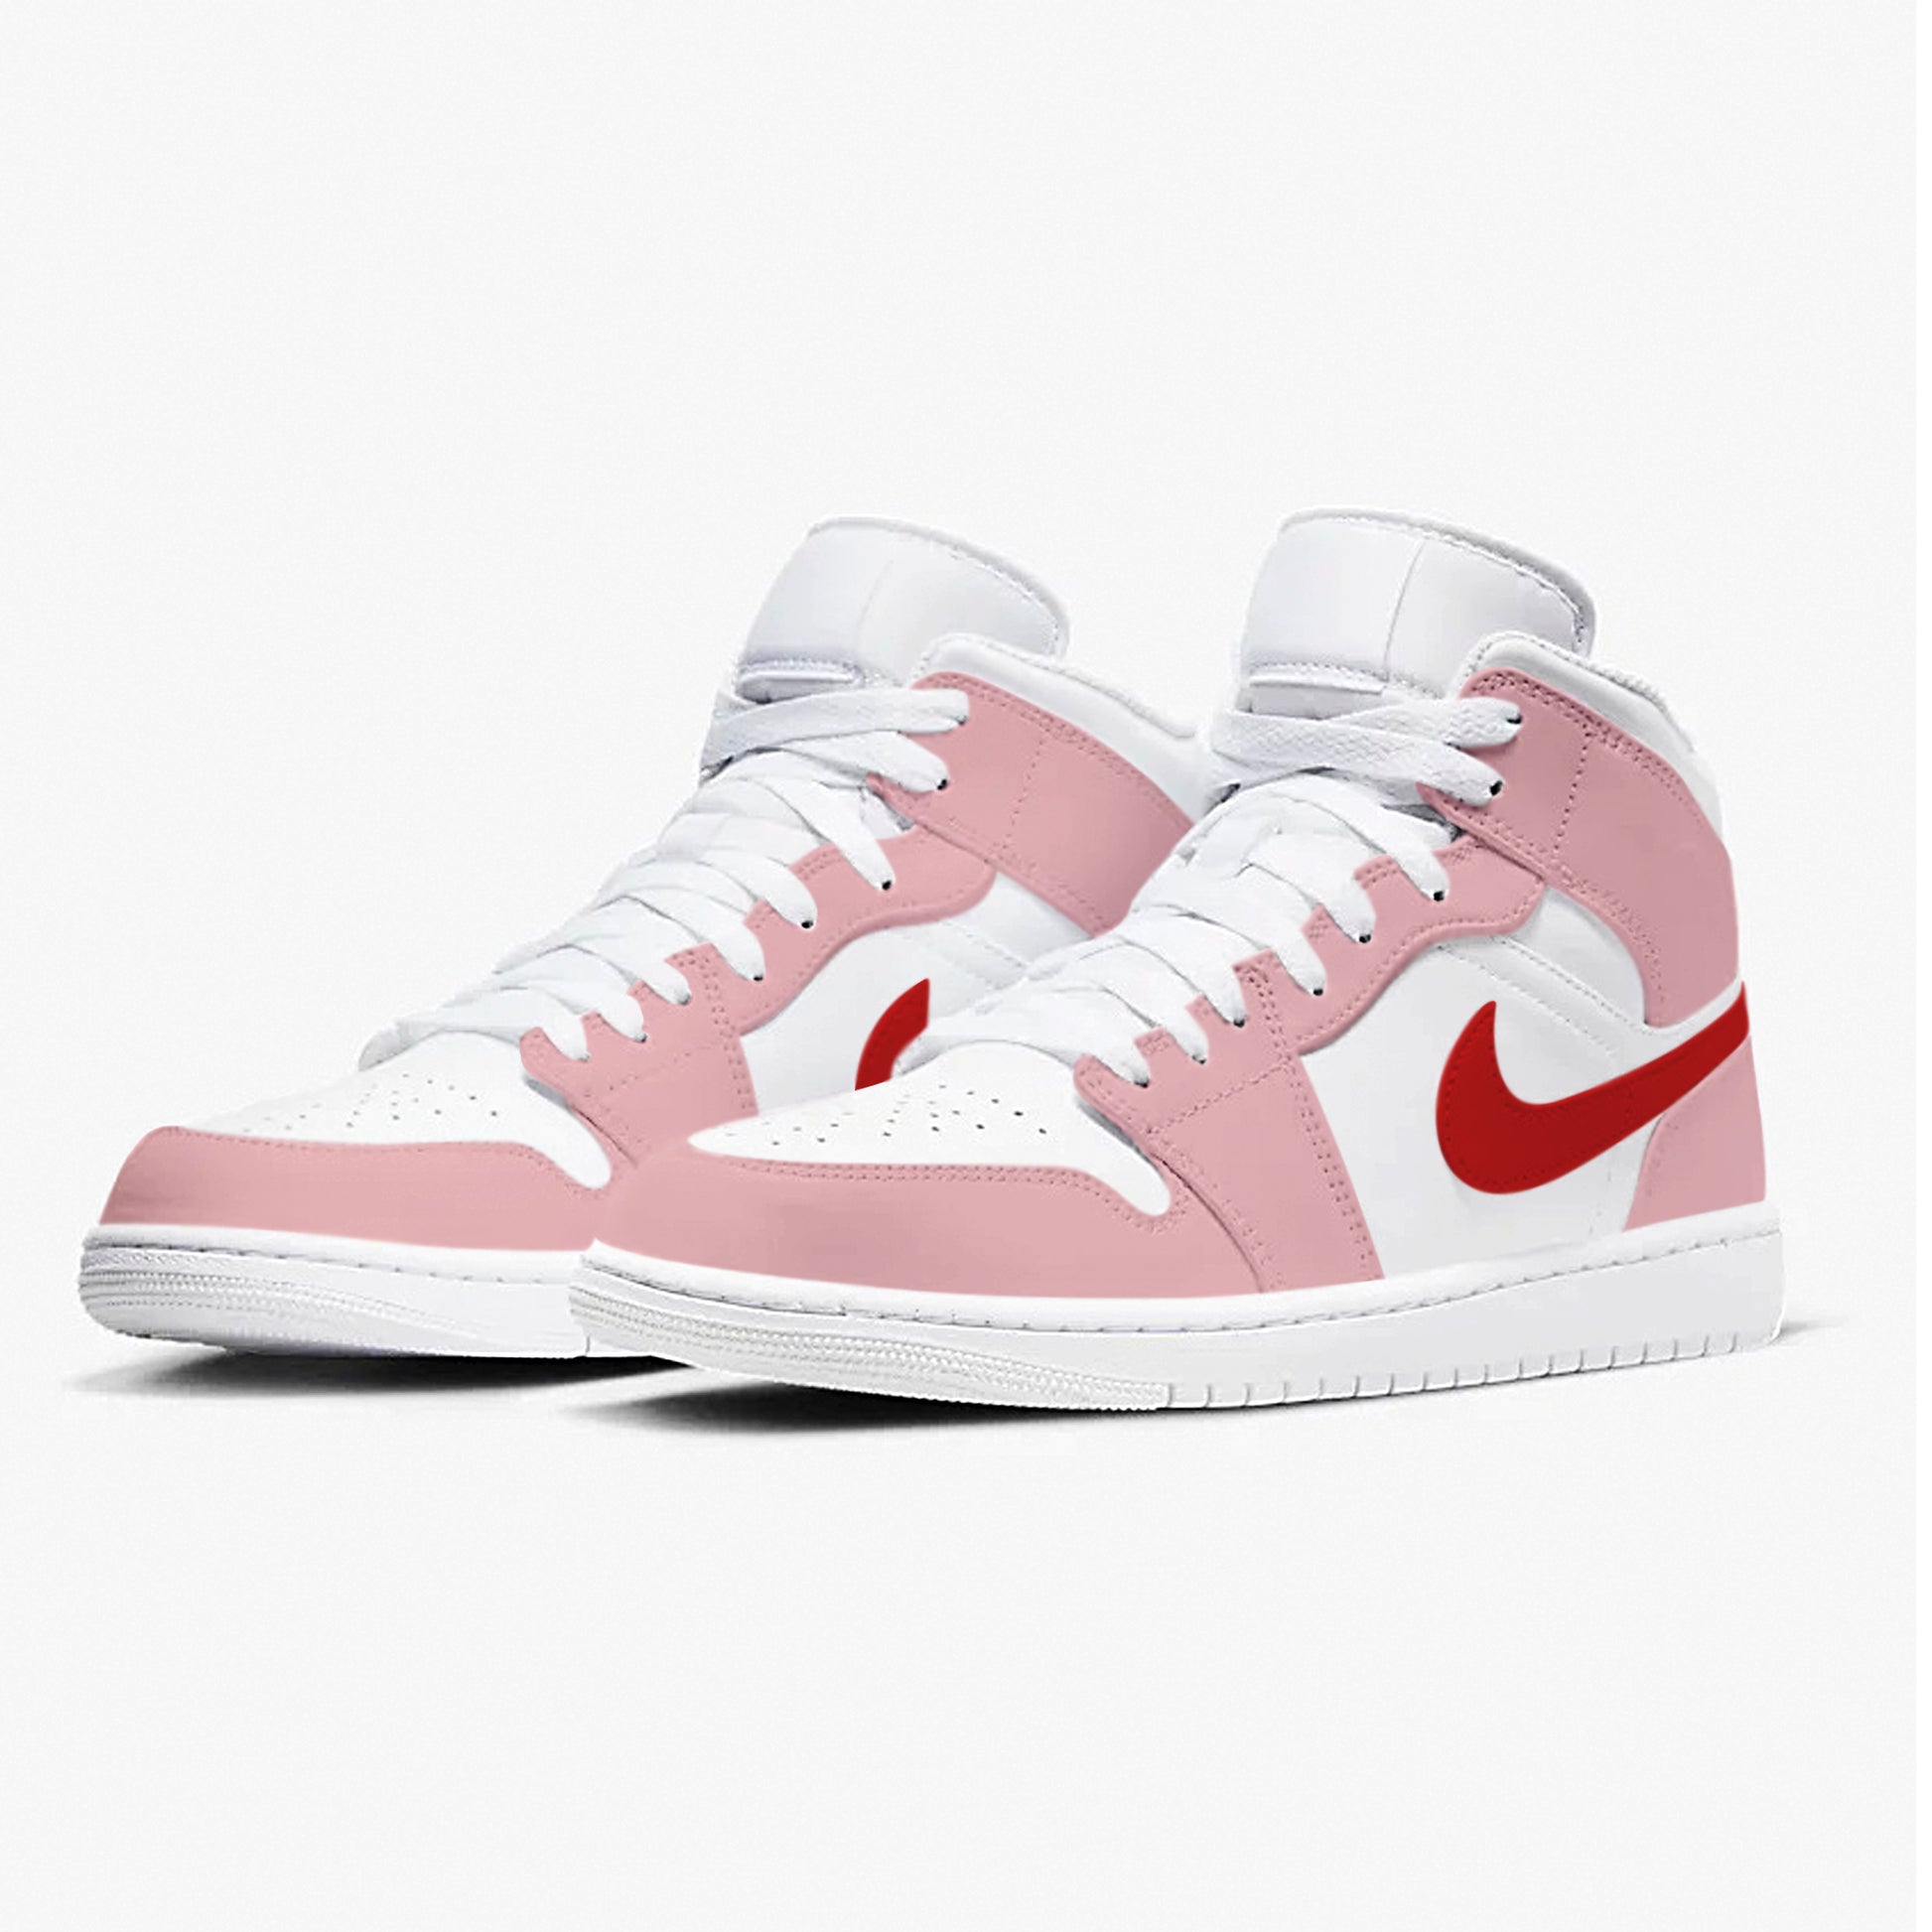 Painted Pink Custom Shoe Air Jordan 1